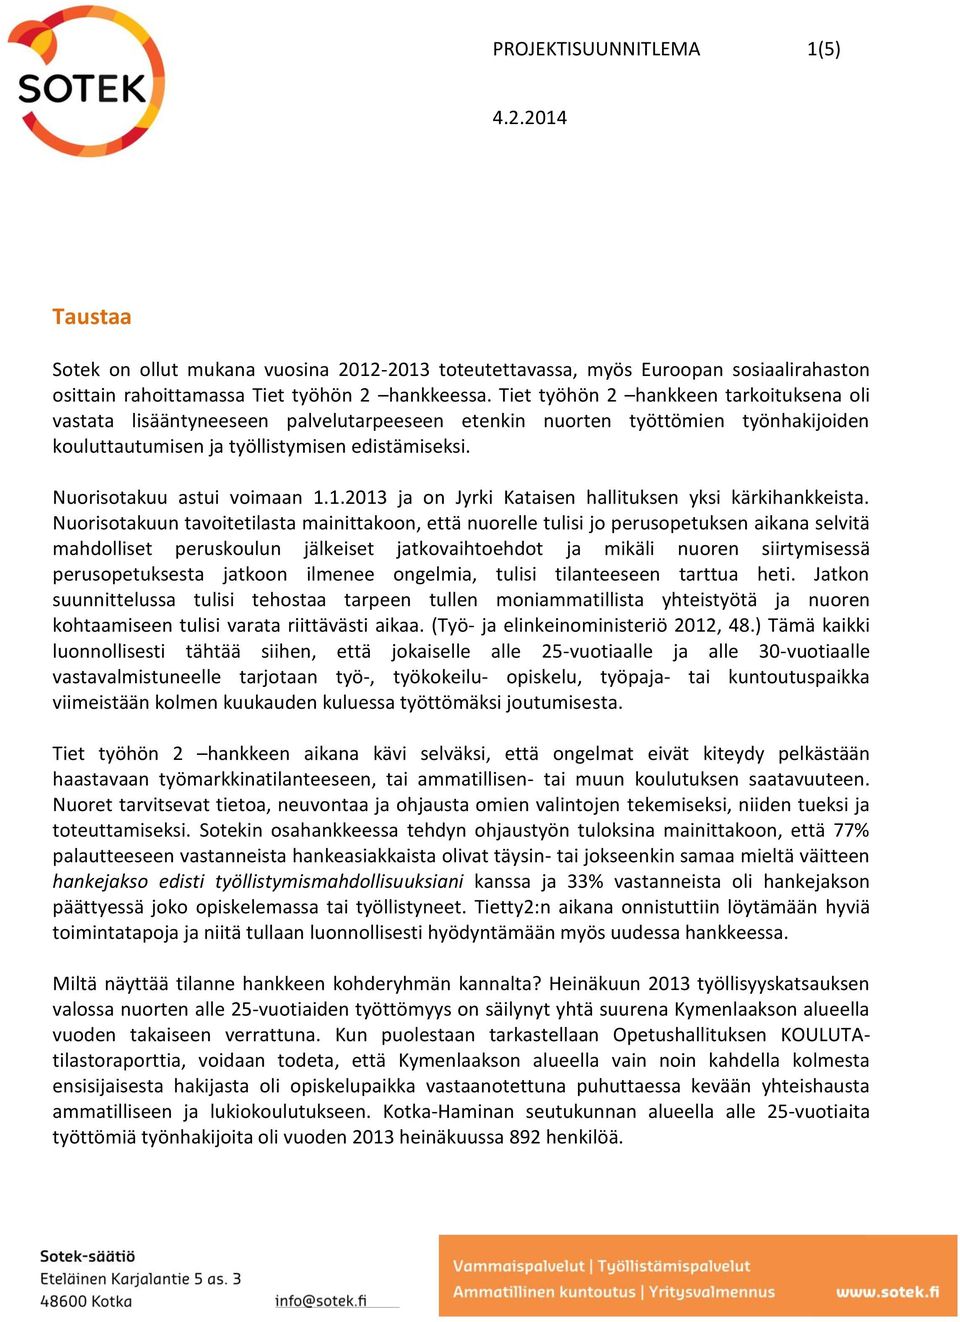 Nuorisotakuu astui voimaan 1.1.2013 ja on Jyrki Kataisen hallituksen yksi kärkihankkeista.